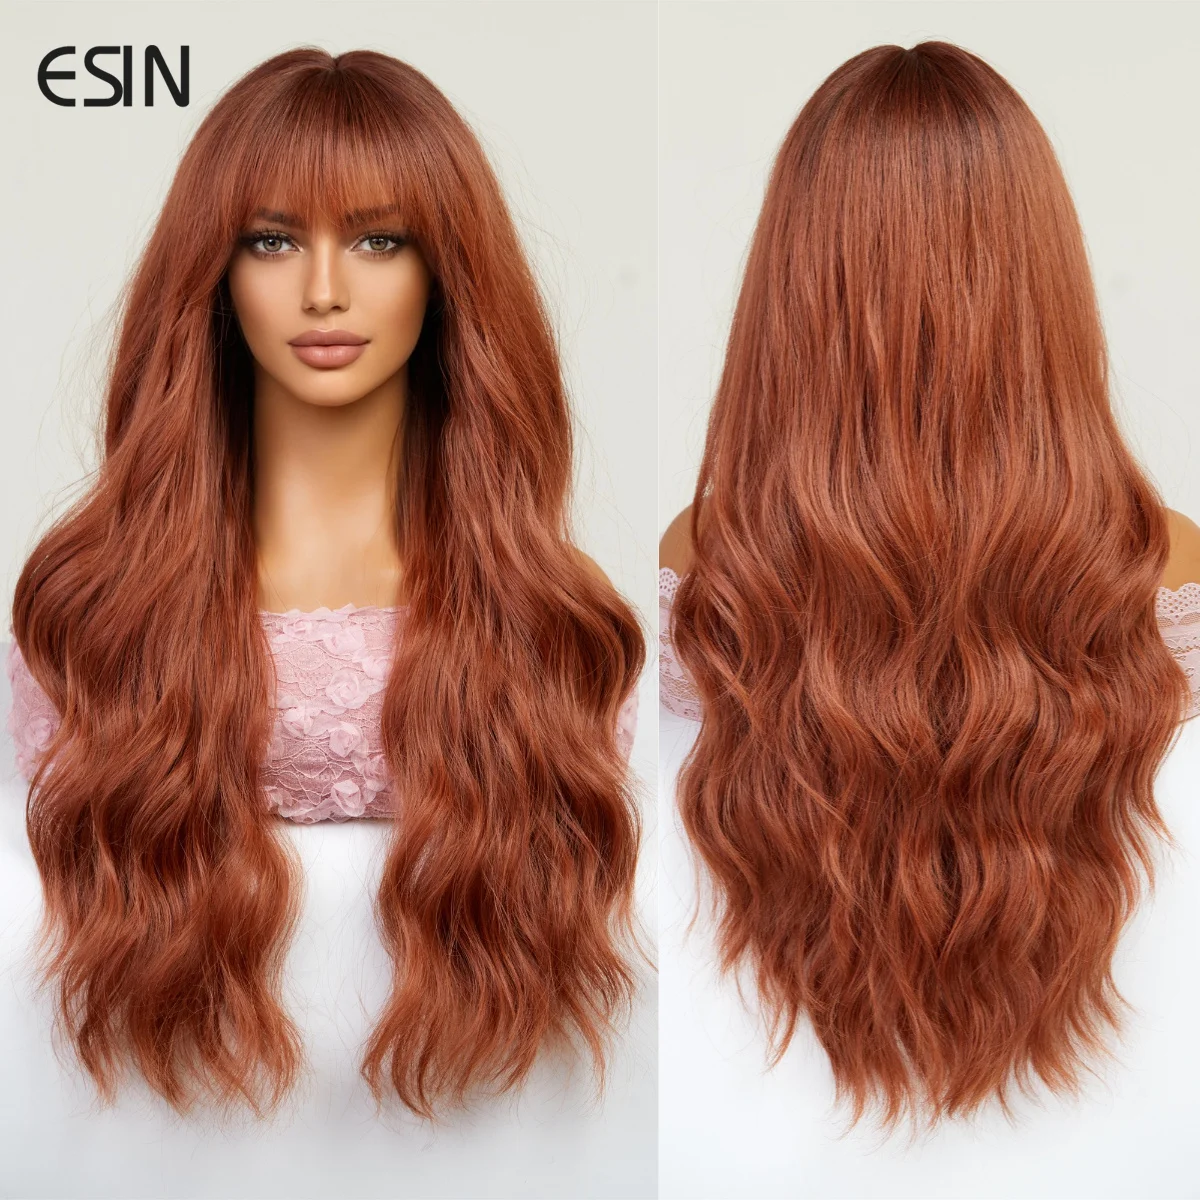 

Синтетический красочный длинный волнистый парик Emmor с челкой для женщин, косплей, натуральный хайлайтер, парик из коричневых волос, волосы из высокотемпературного волокна